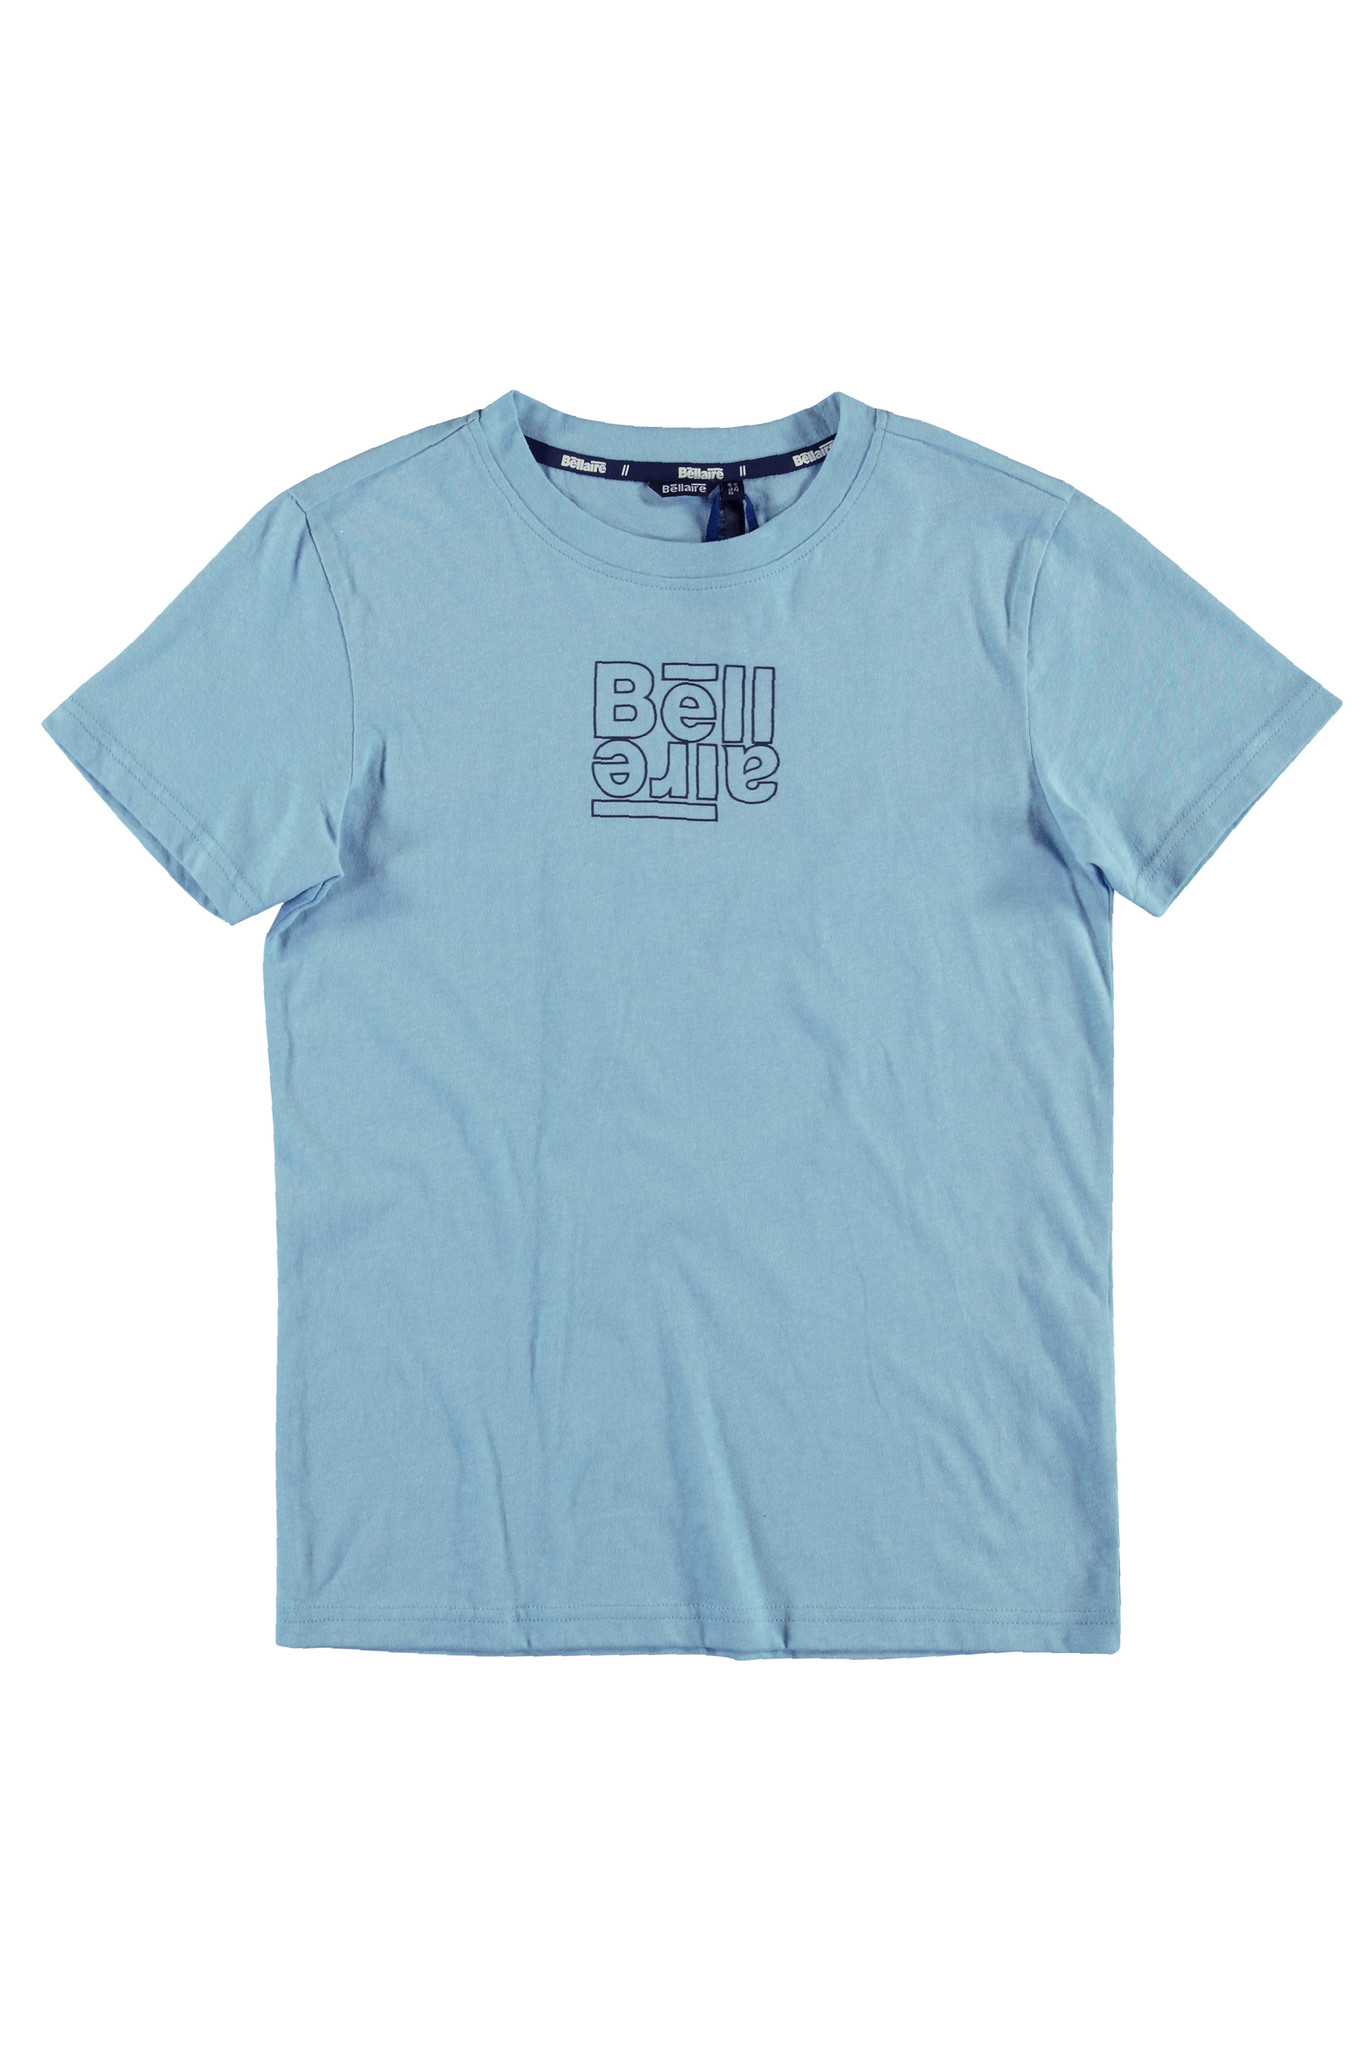 Bellaire jongens t-shirt met ronde nek en klein logo Angel Falls